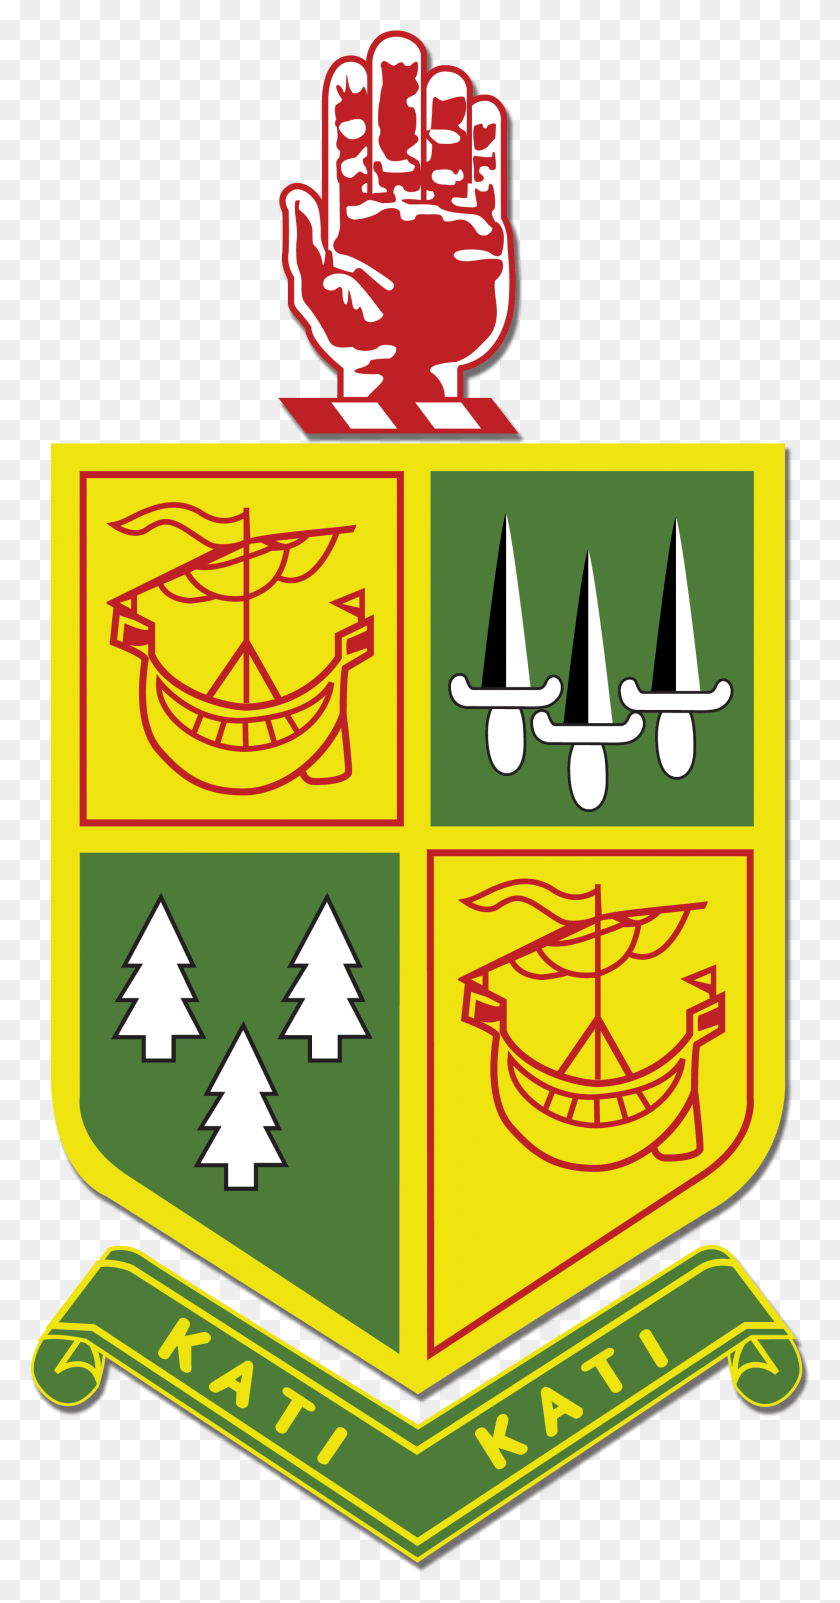 1712x3388 Escudo De La Universidad De Katikati, Logotipo De La Escuela De Katikati College, Símbolo, Texto, Emblema Hd Png